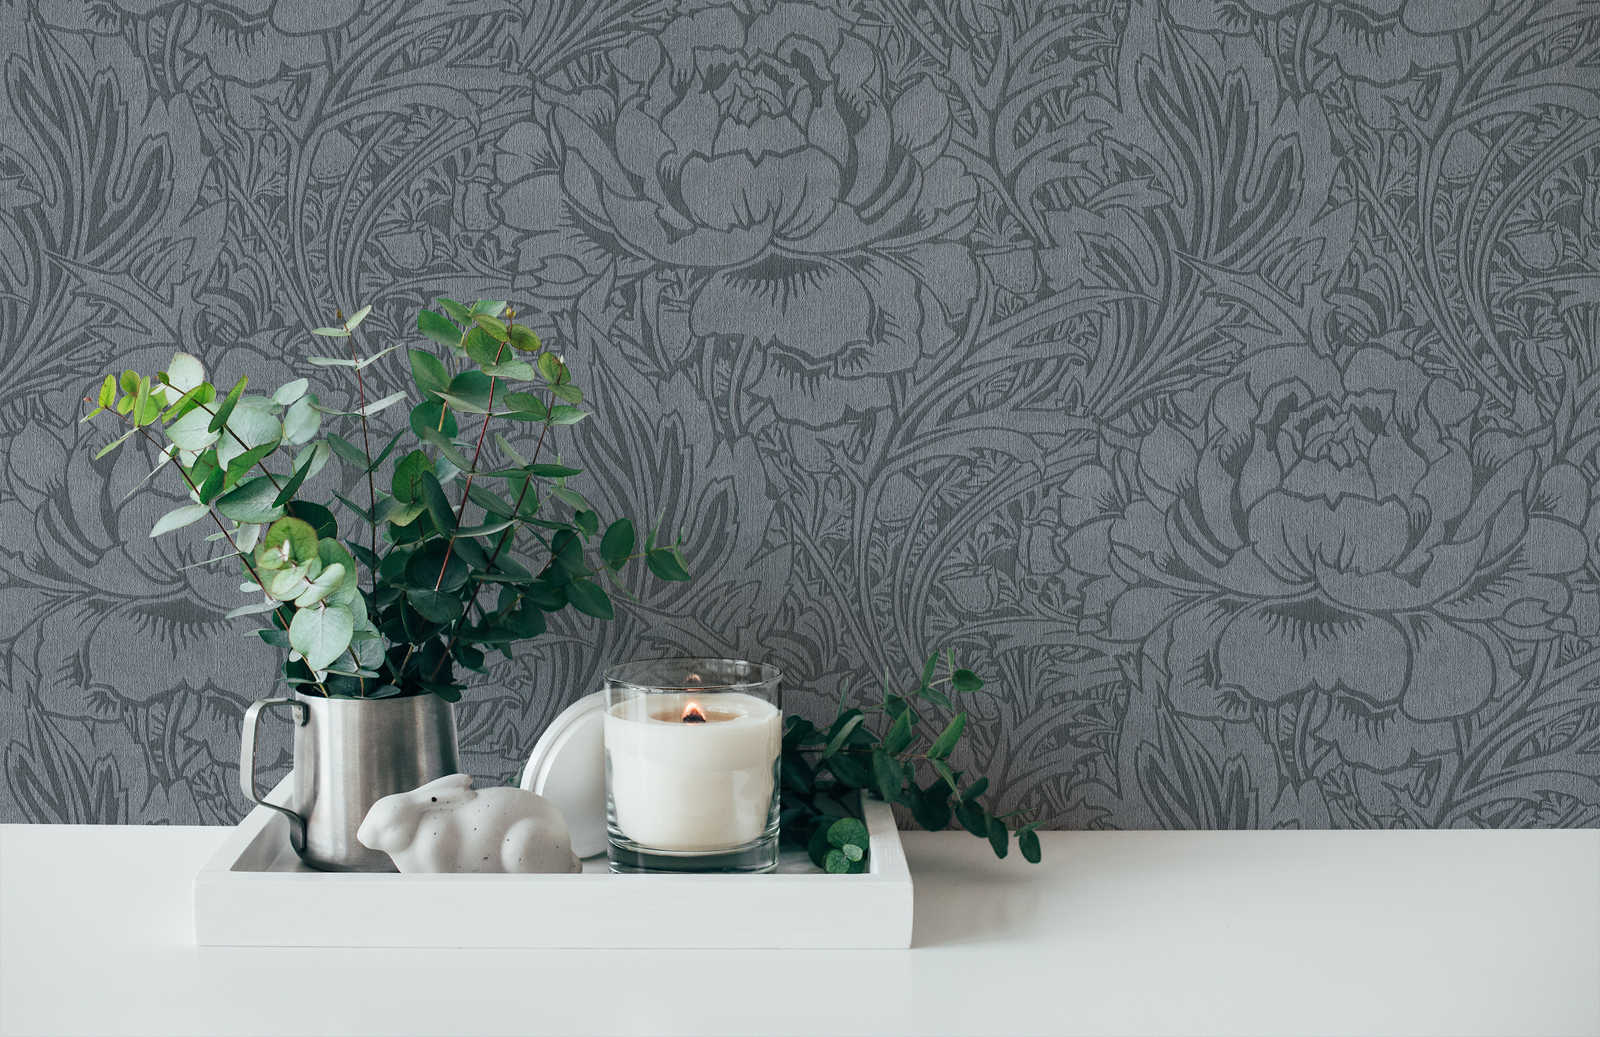             Papier peint fleuri gris avec design floral art nouveau
        